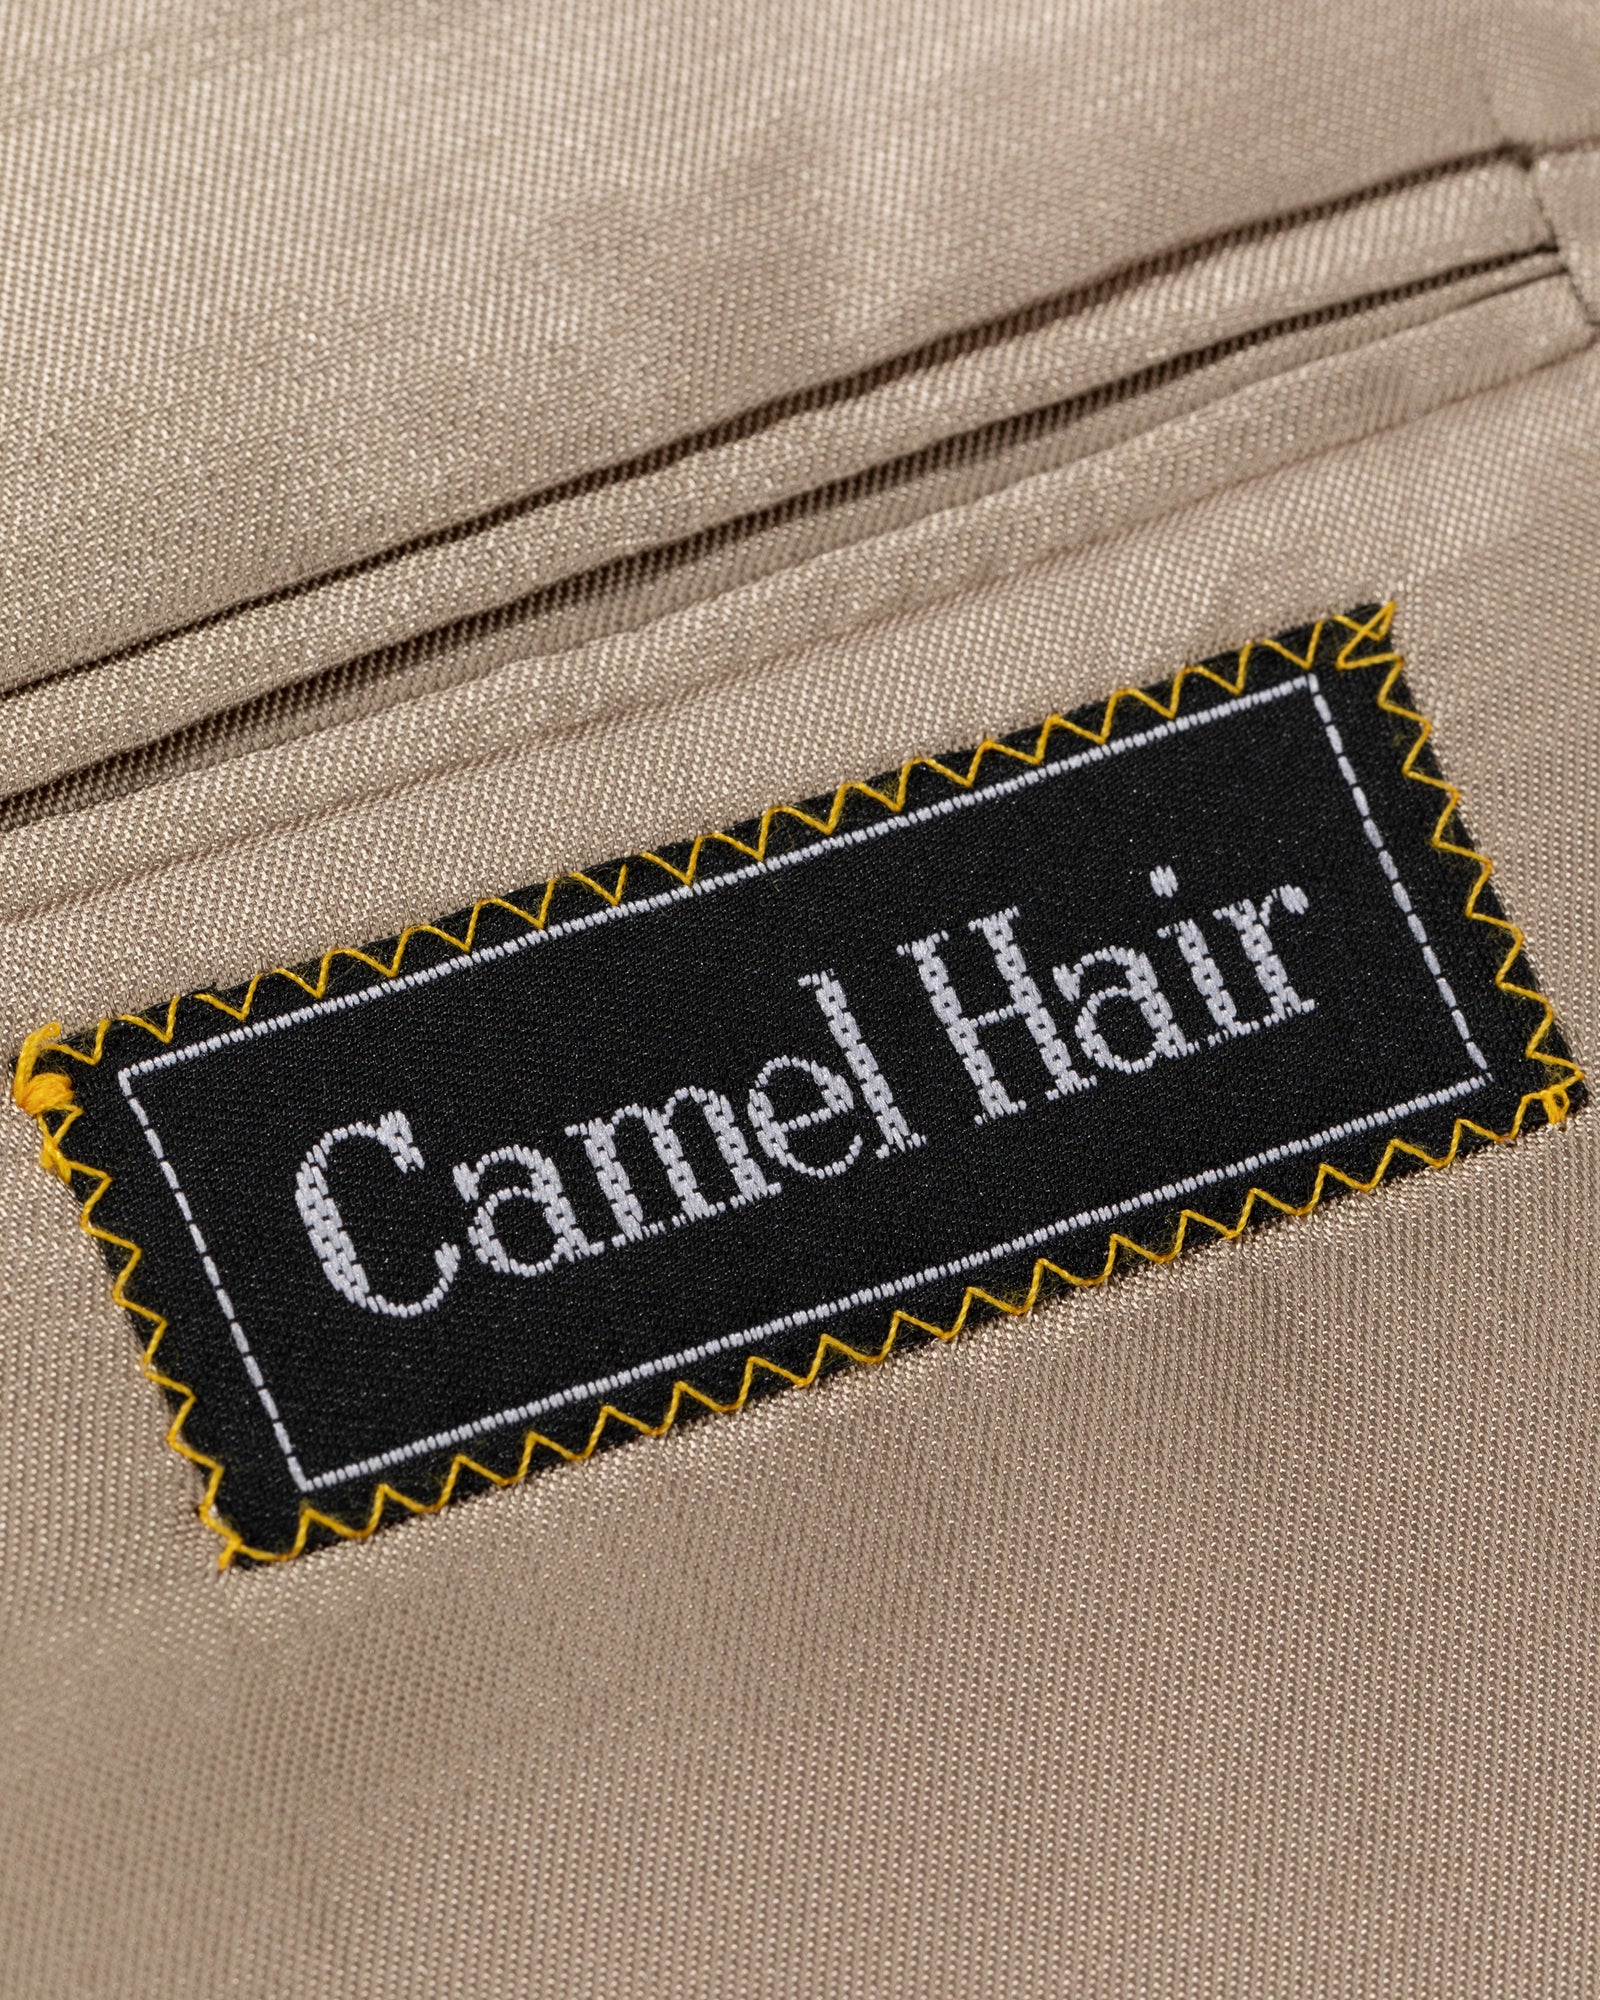 Vintage Camel Hair Sport Jacket